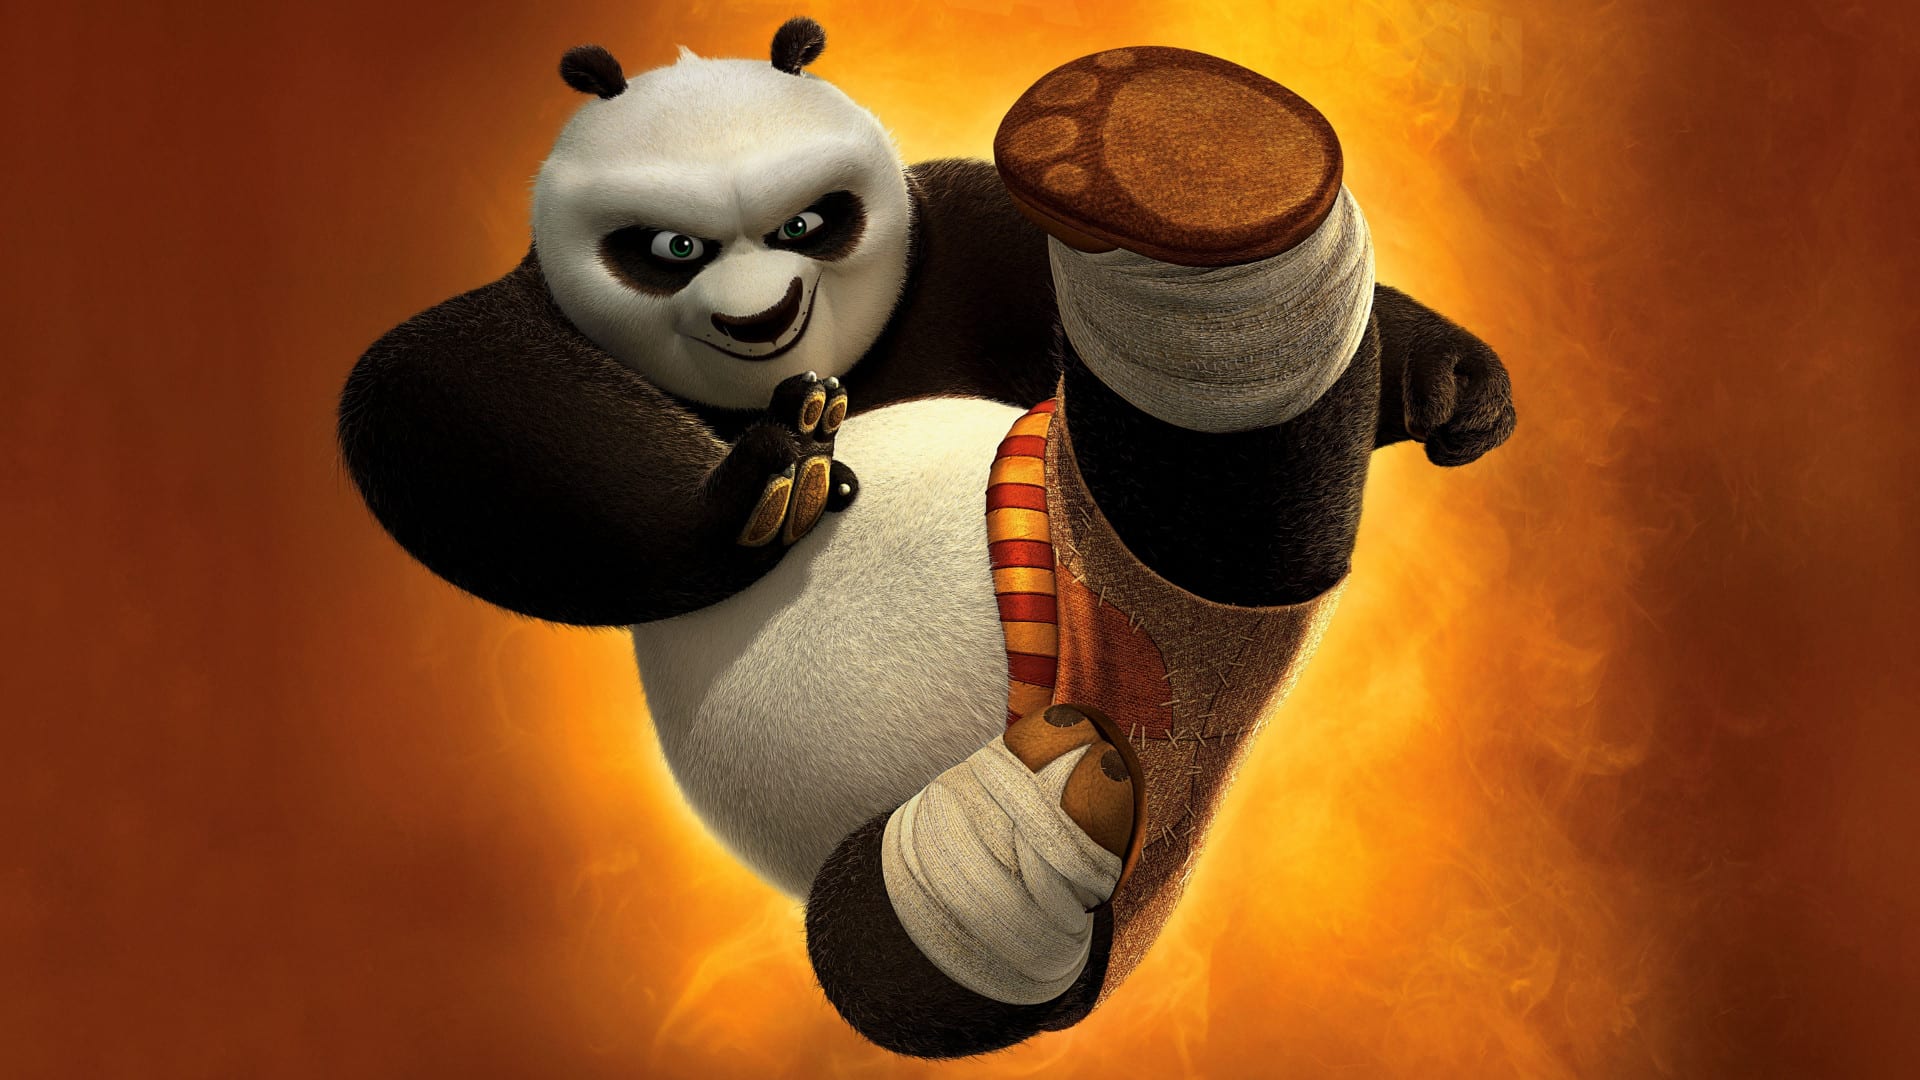 GuidaTV 16 Gennaio 2021 · C'è posta per te vs Affari Tuoi: Viva gli sposi!, Il tabaccaio di Vienna, Eden un pianeta da salvare, Kung Fu Panda 2, The Gunman